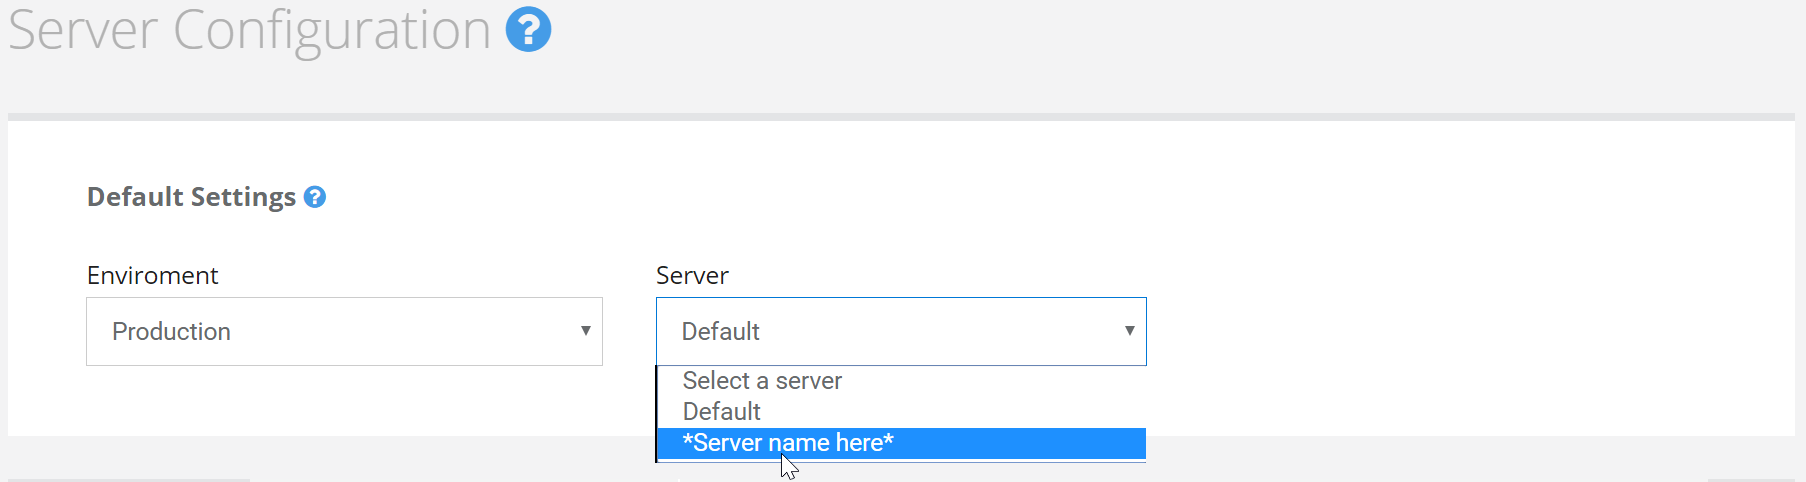 Default server